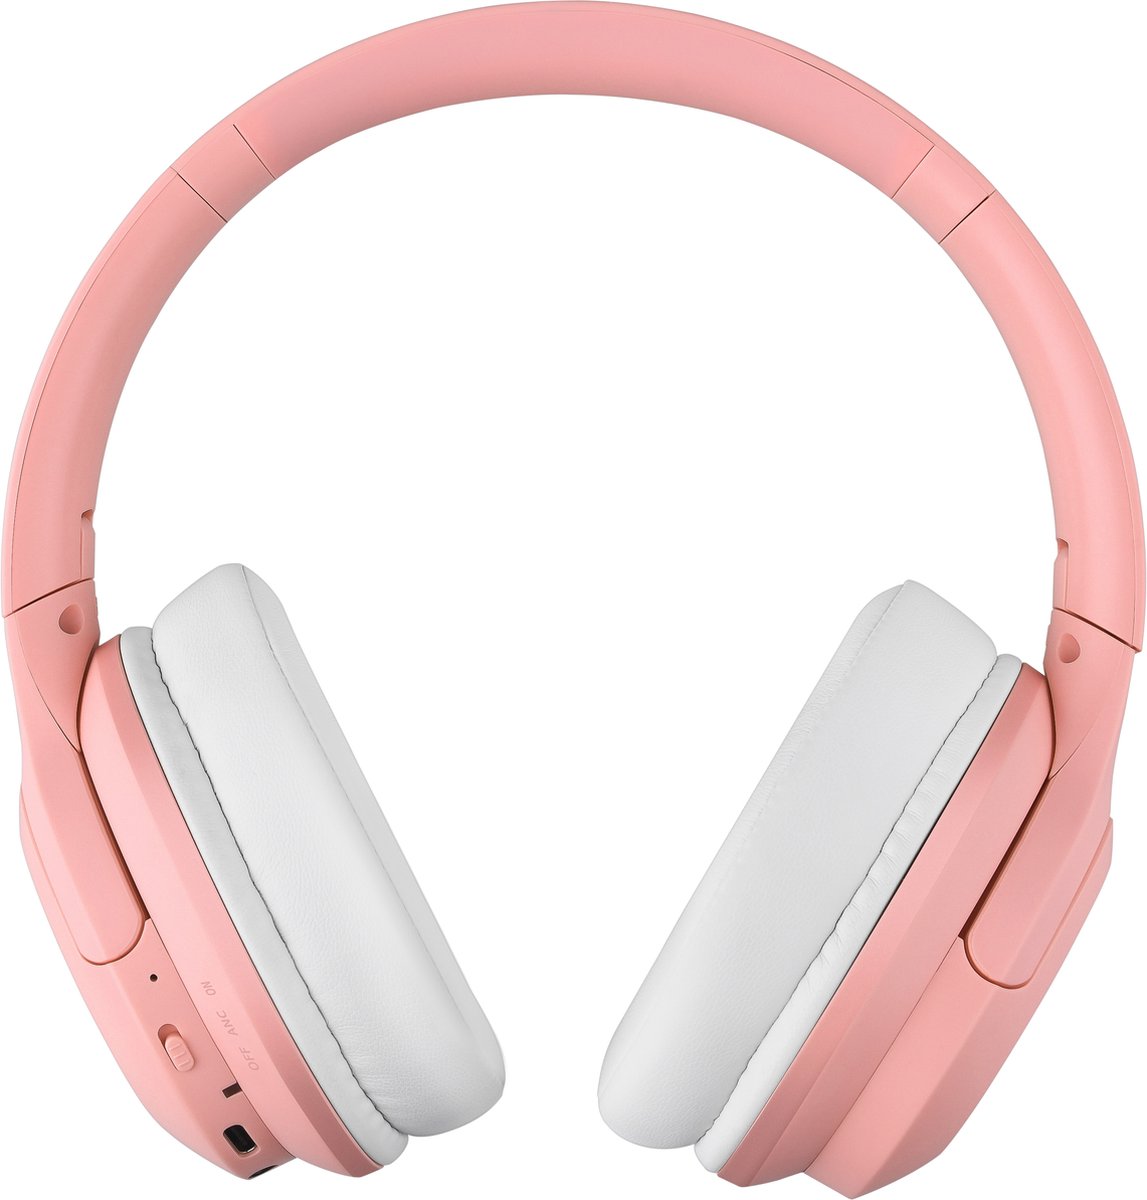 Draadloze Kinderkoptelefoon met Actieve Noise Cancelling (ANC) Bluetooth - 35 uur speeltijd – Koptelefoon Kind – Over Ear - Roze